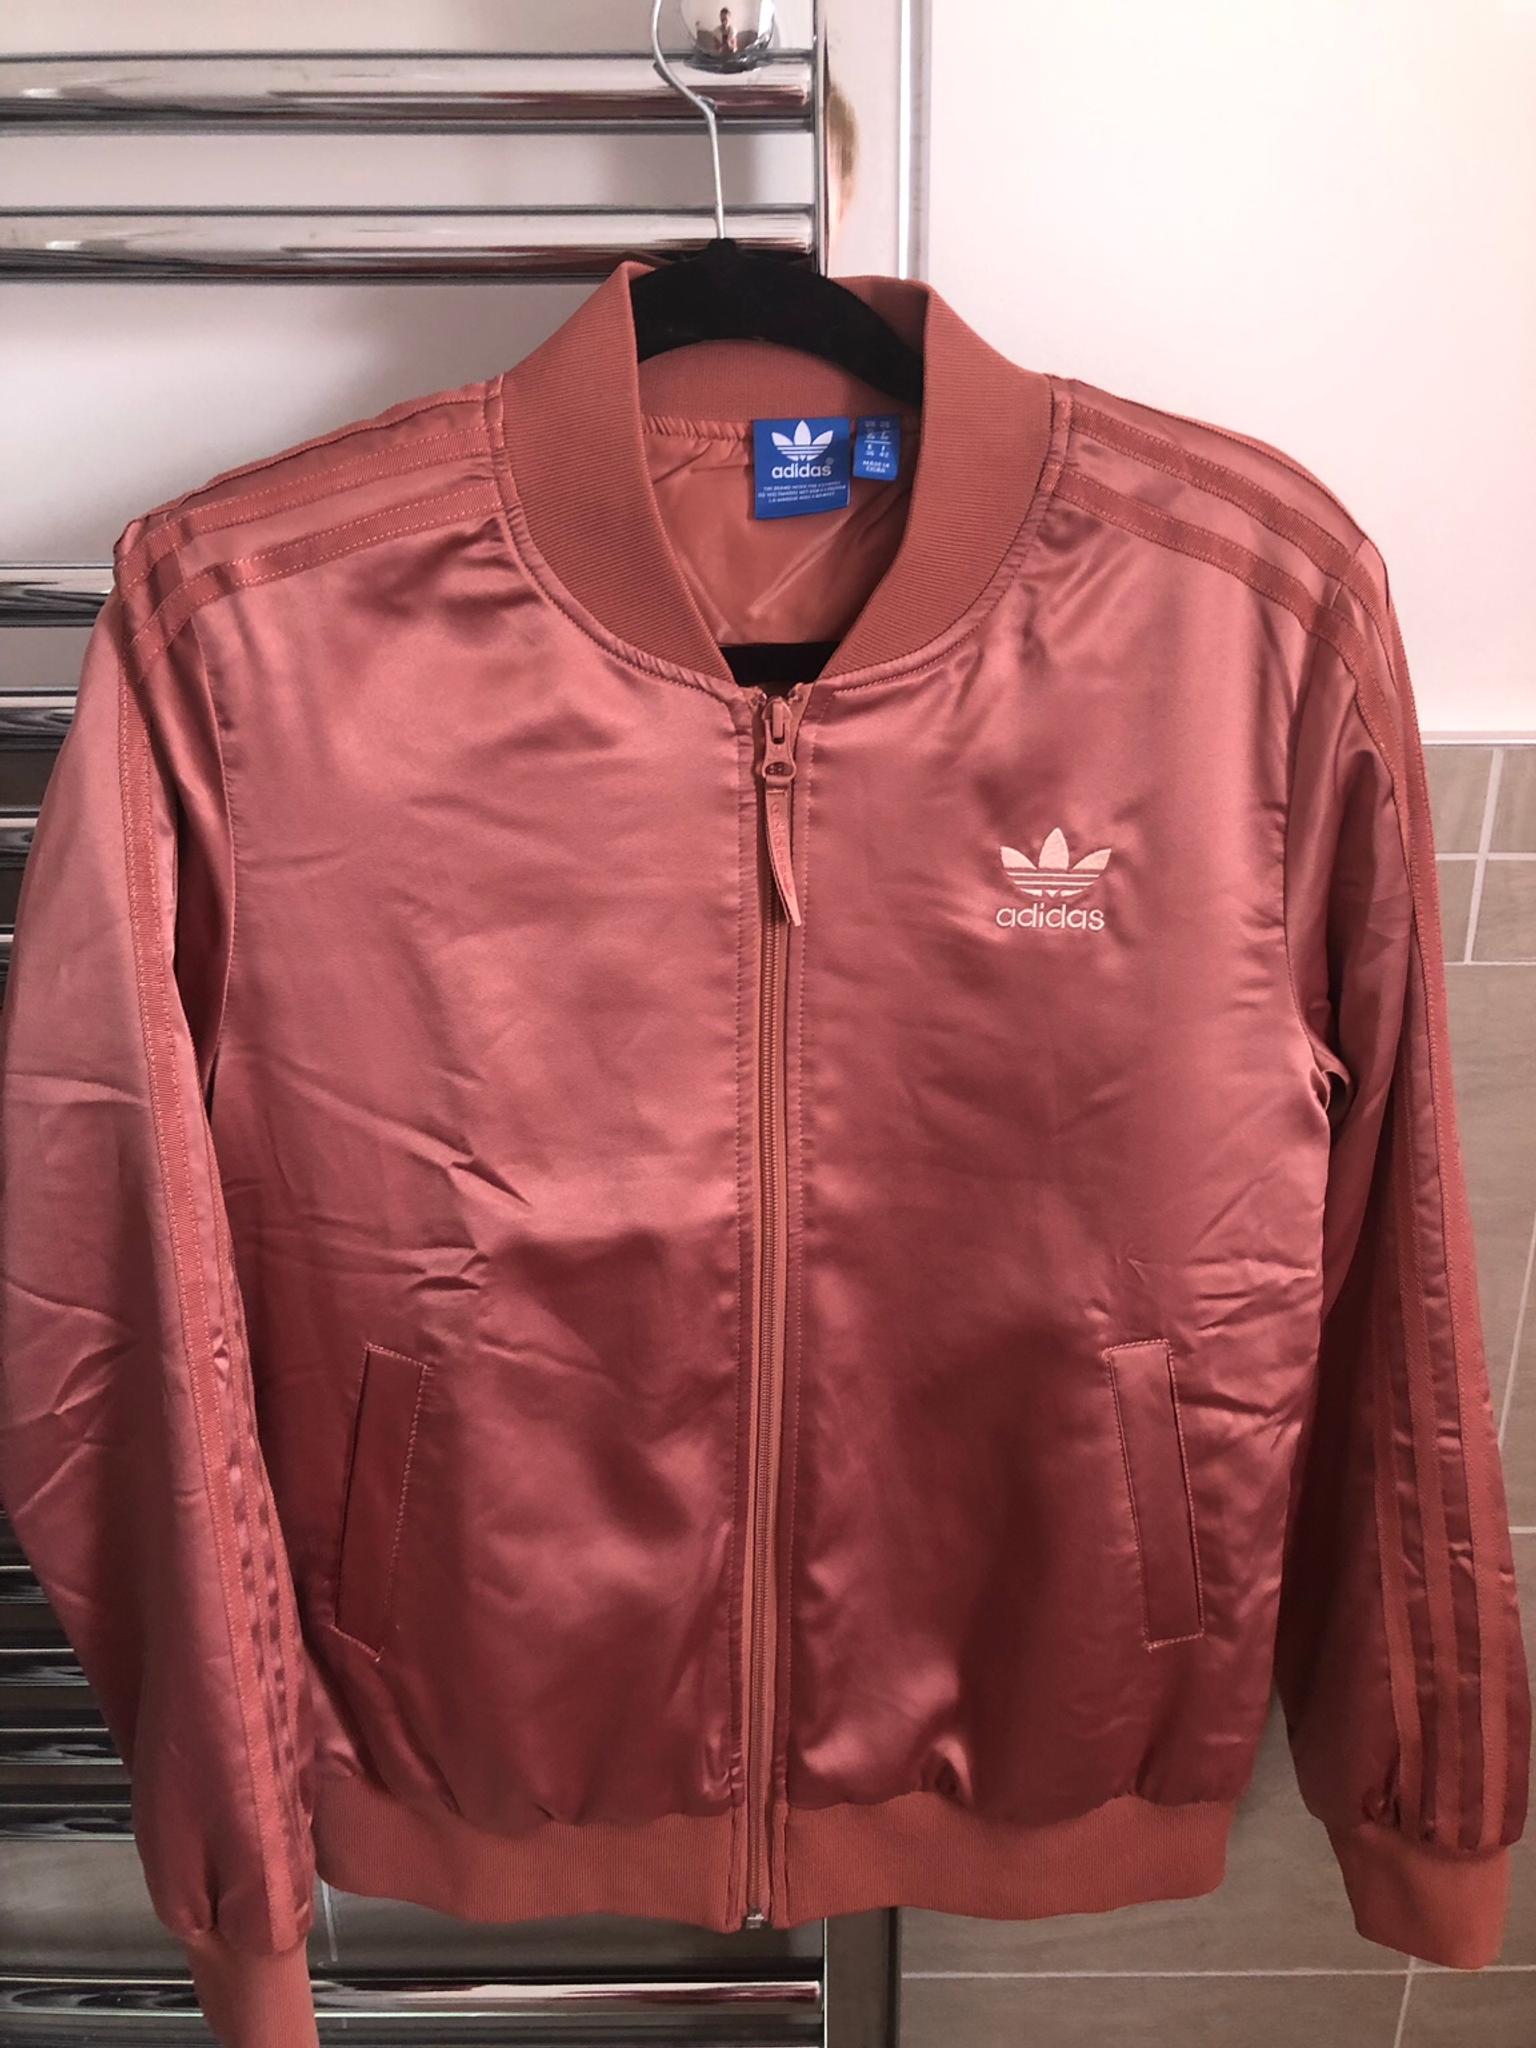 rose gold adidas jacket